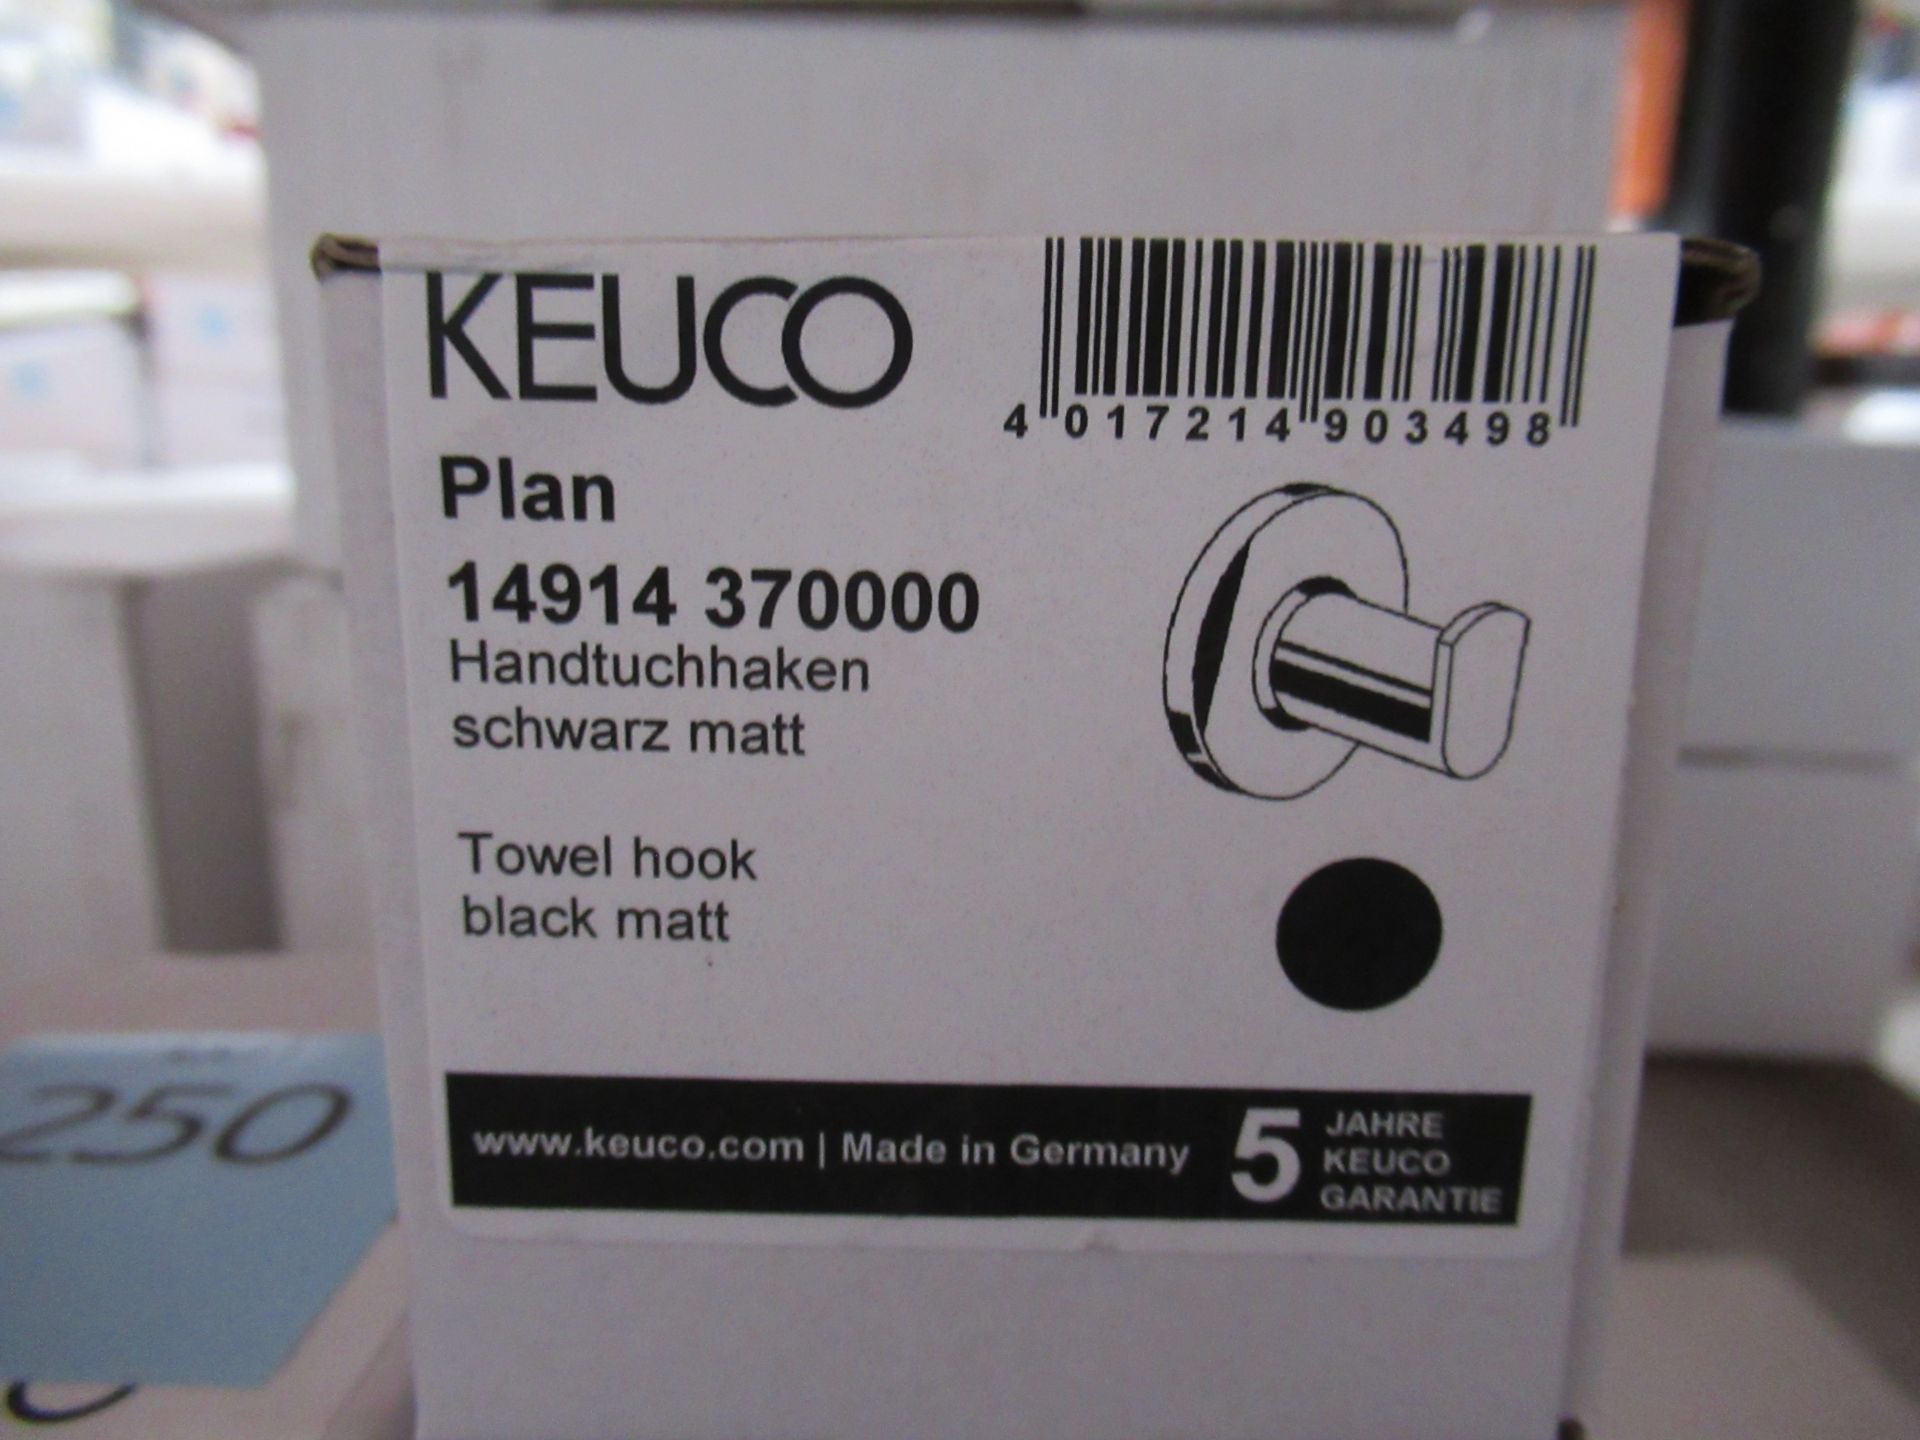 7x Keuco Plan Towel Hook Black Matt P/N 14914-370000 - Image 2 of 2